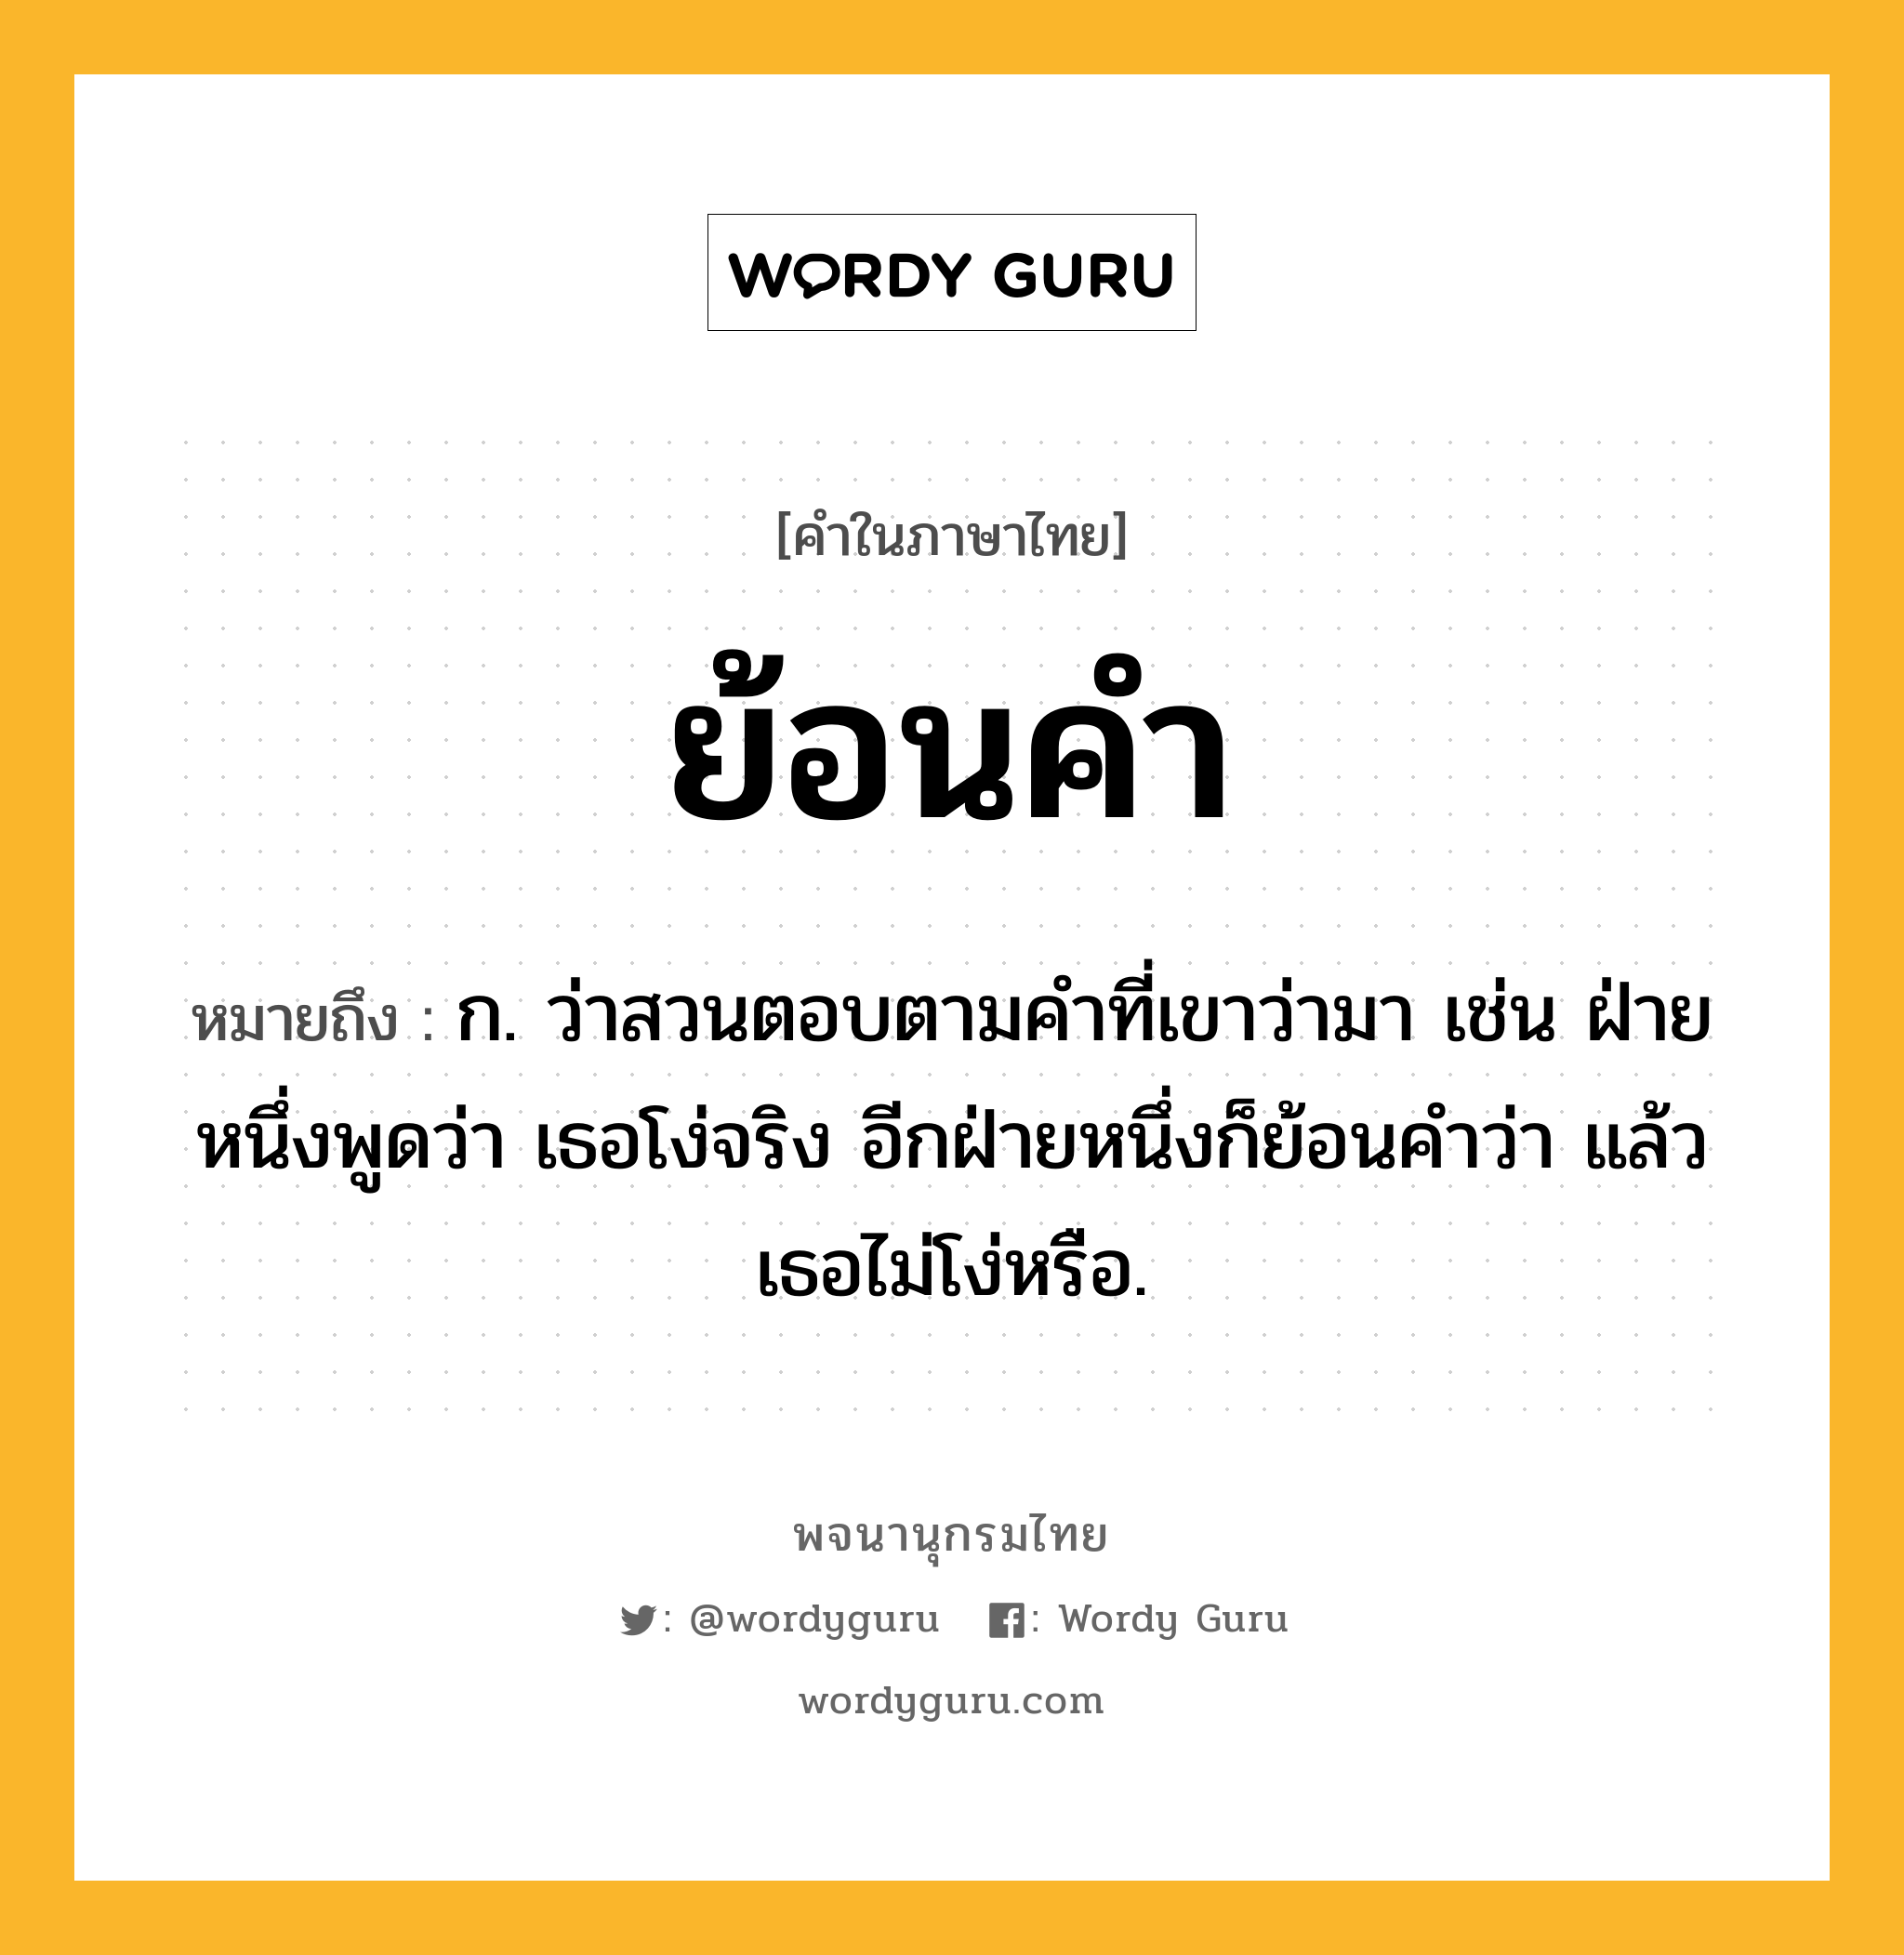 ย้อนคำ หมายถึงอะไร?, คำในภาษาไทย ย้อนคำ หมายถึง ก. ว่าสวนตอบตามคำที่เขาว่ามา เช่น ฝ่ายหนึ่งพูดว่า เธอโง่จริง อีกฝ่ายหนึ่งก็ย้อนคำว่า แล้วเธอไม่โง่หรือ.